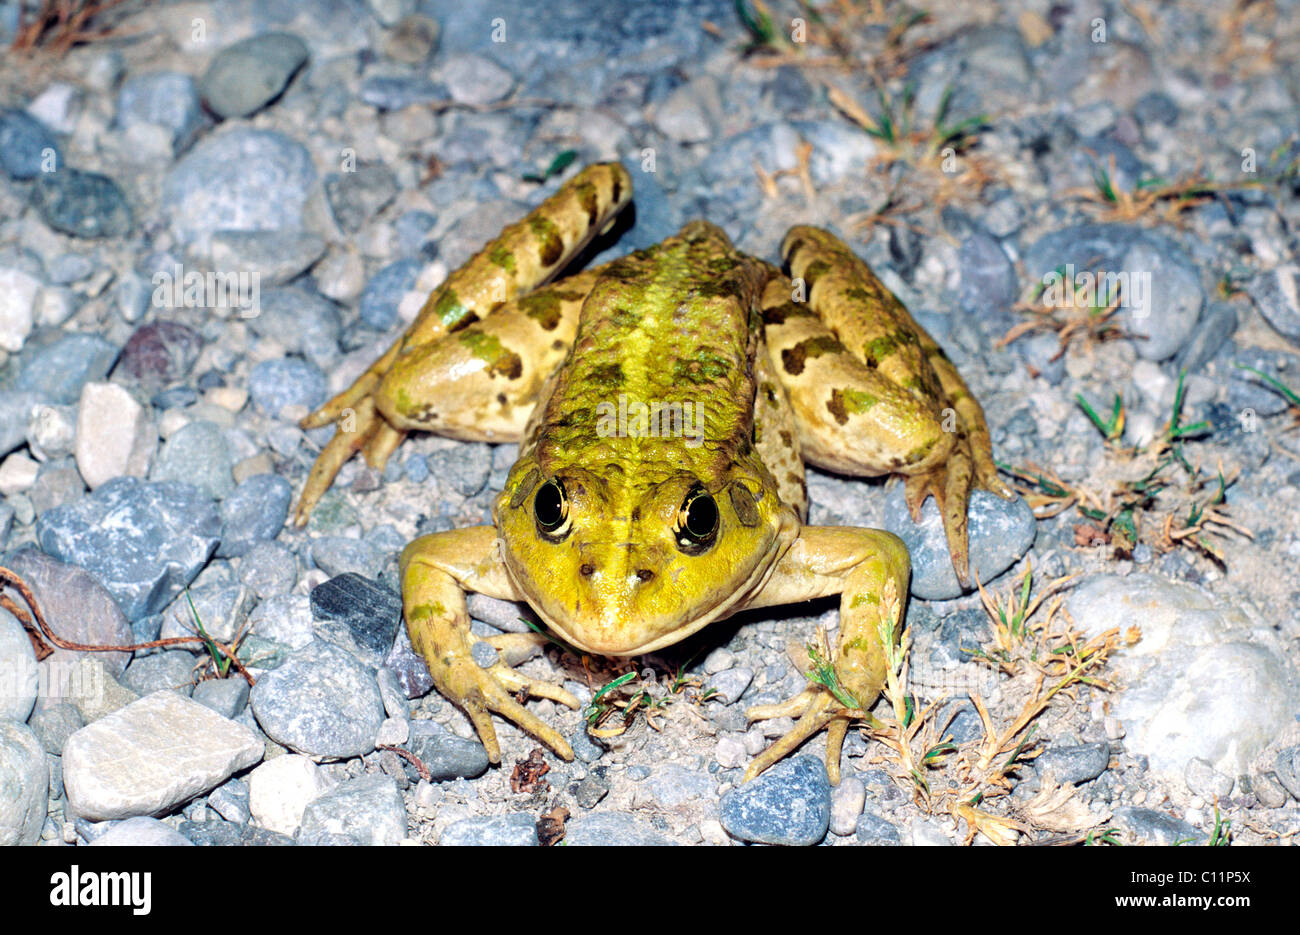 Marsh frog (Rana ridibunda Pallas) Stock Photo